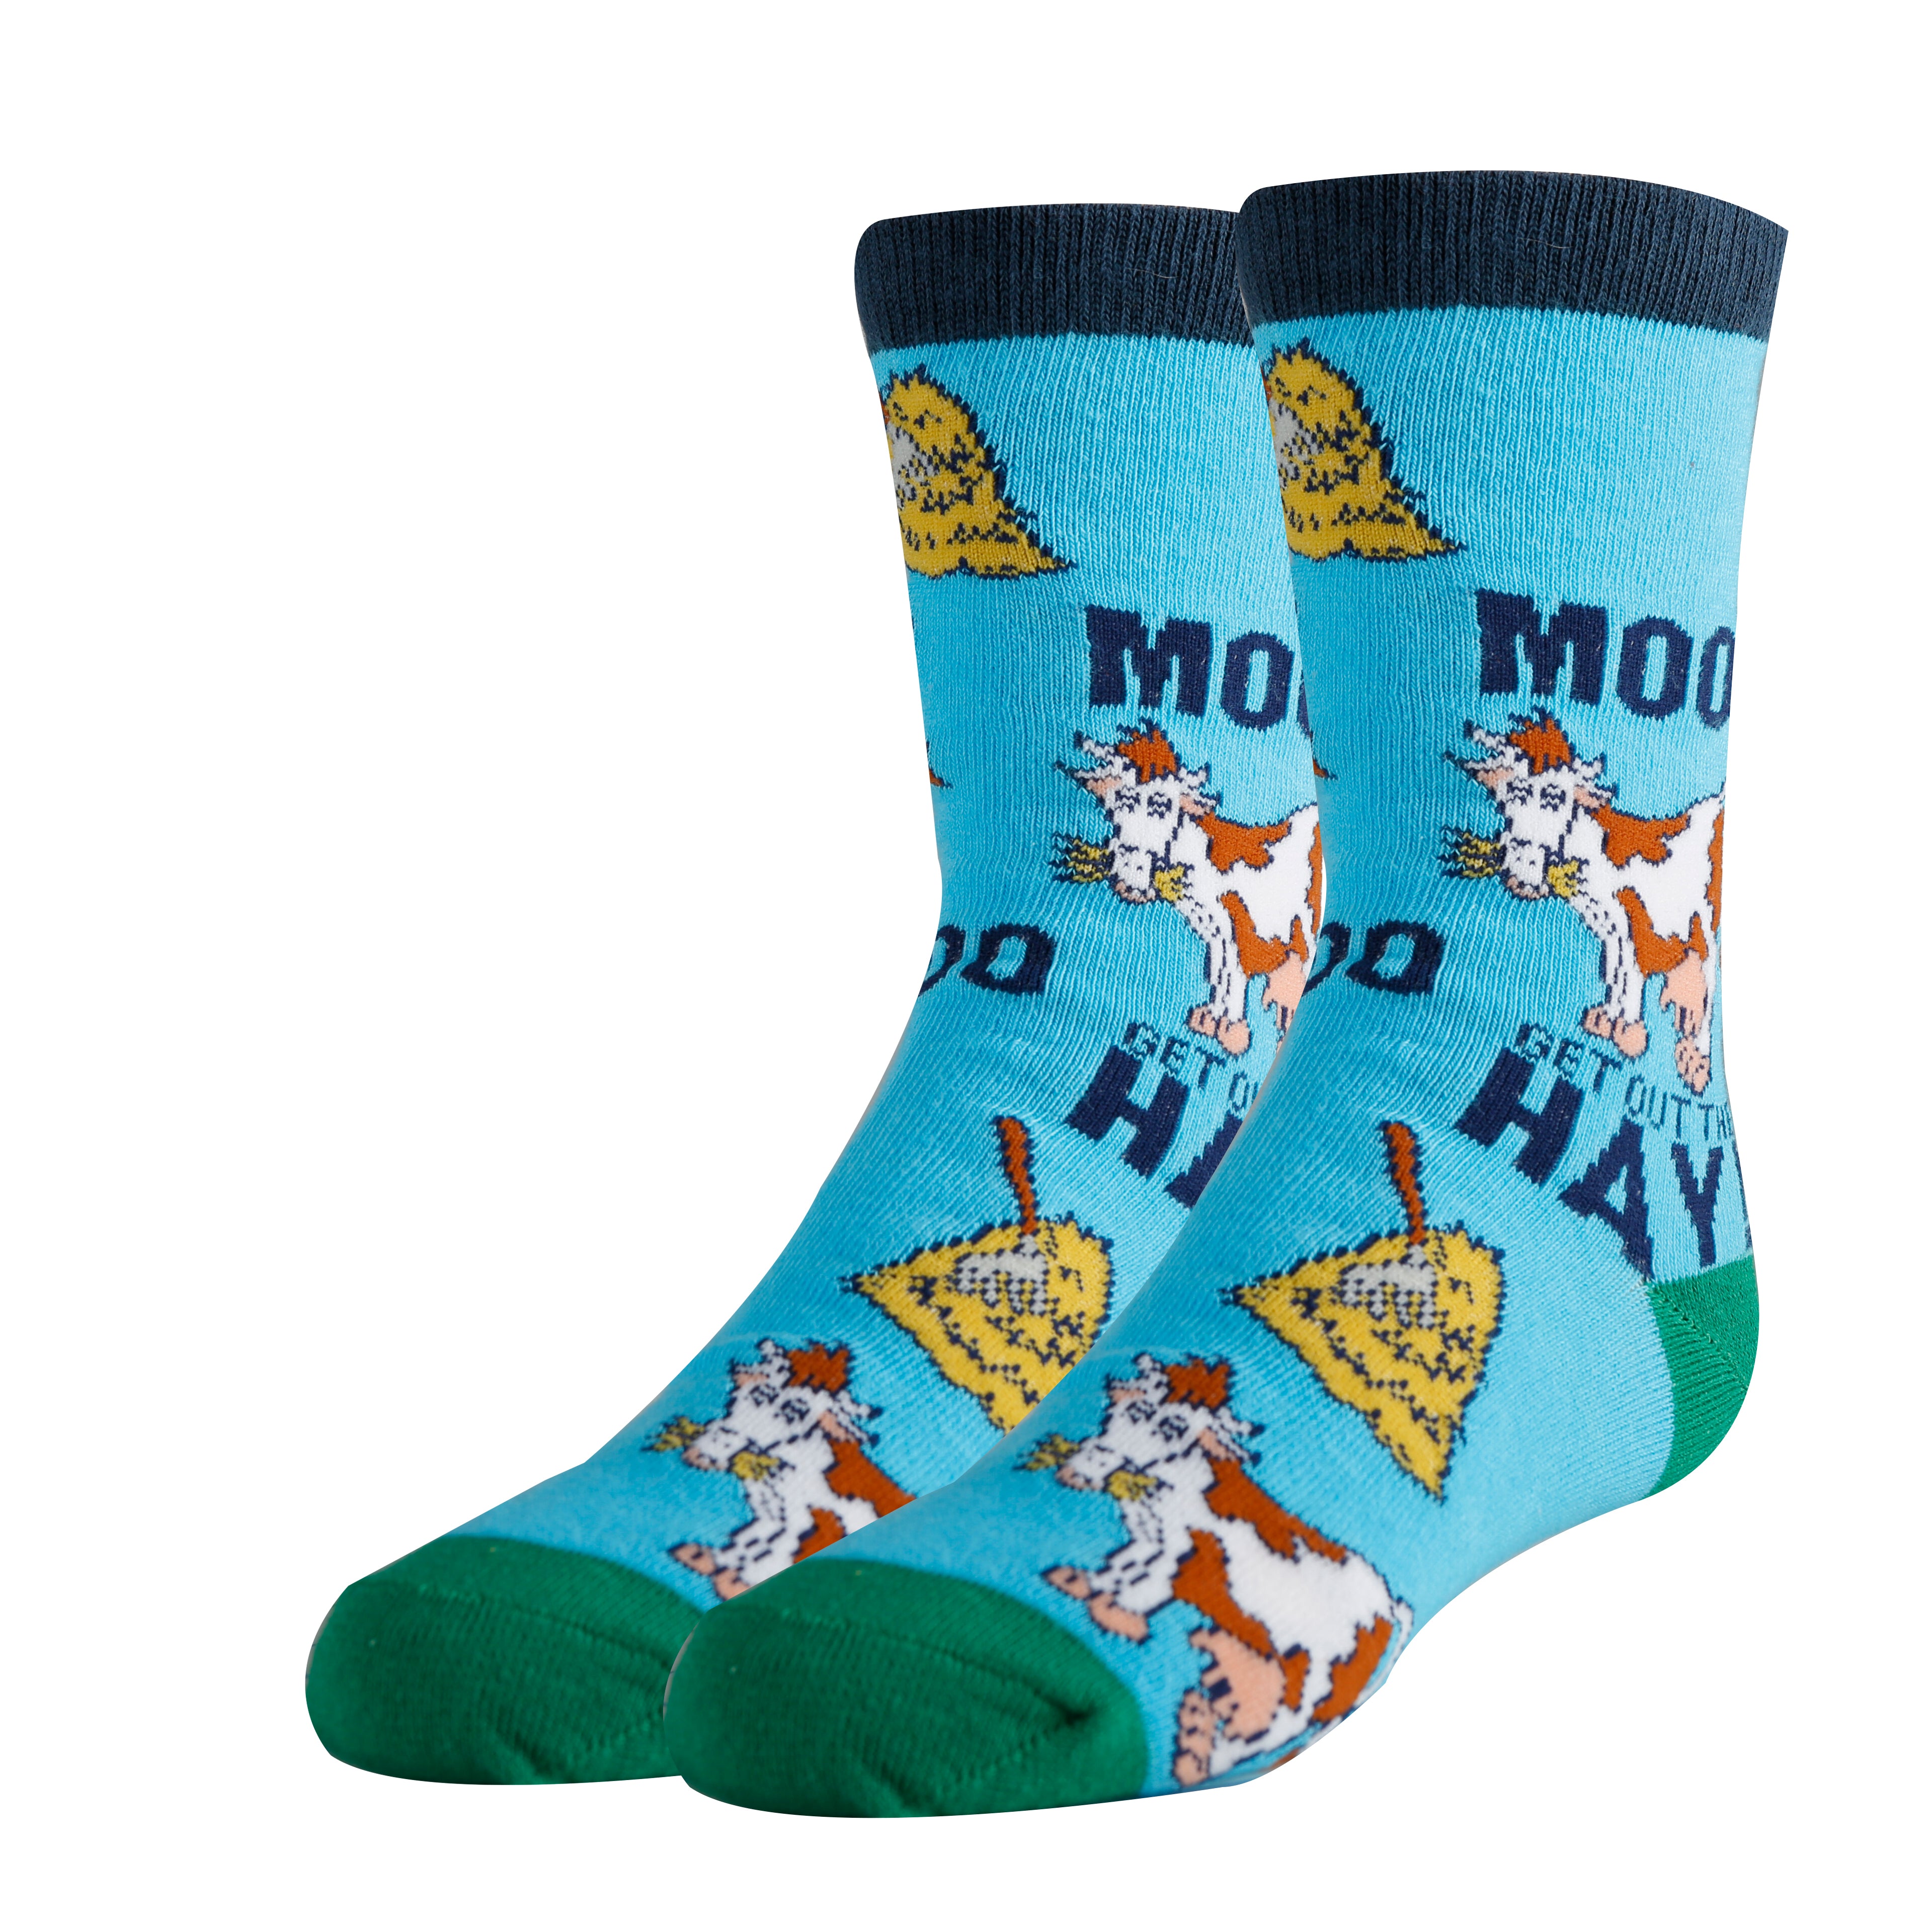 Mooo Over Socks | Novelty Crew Socks for Kids